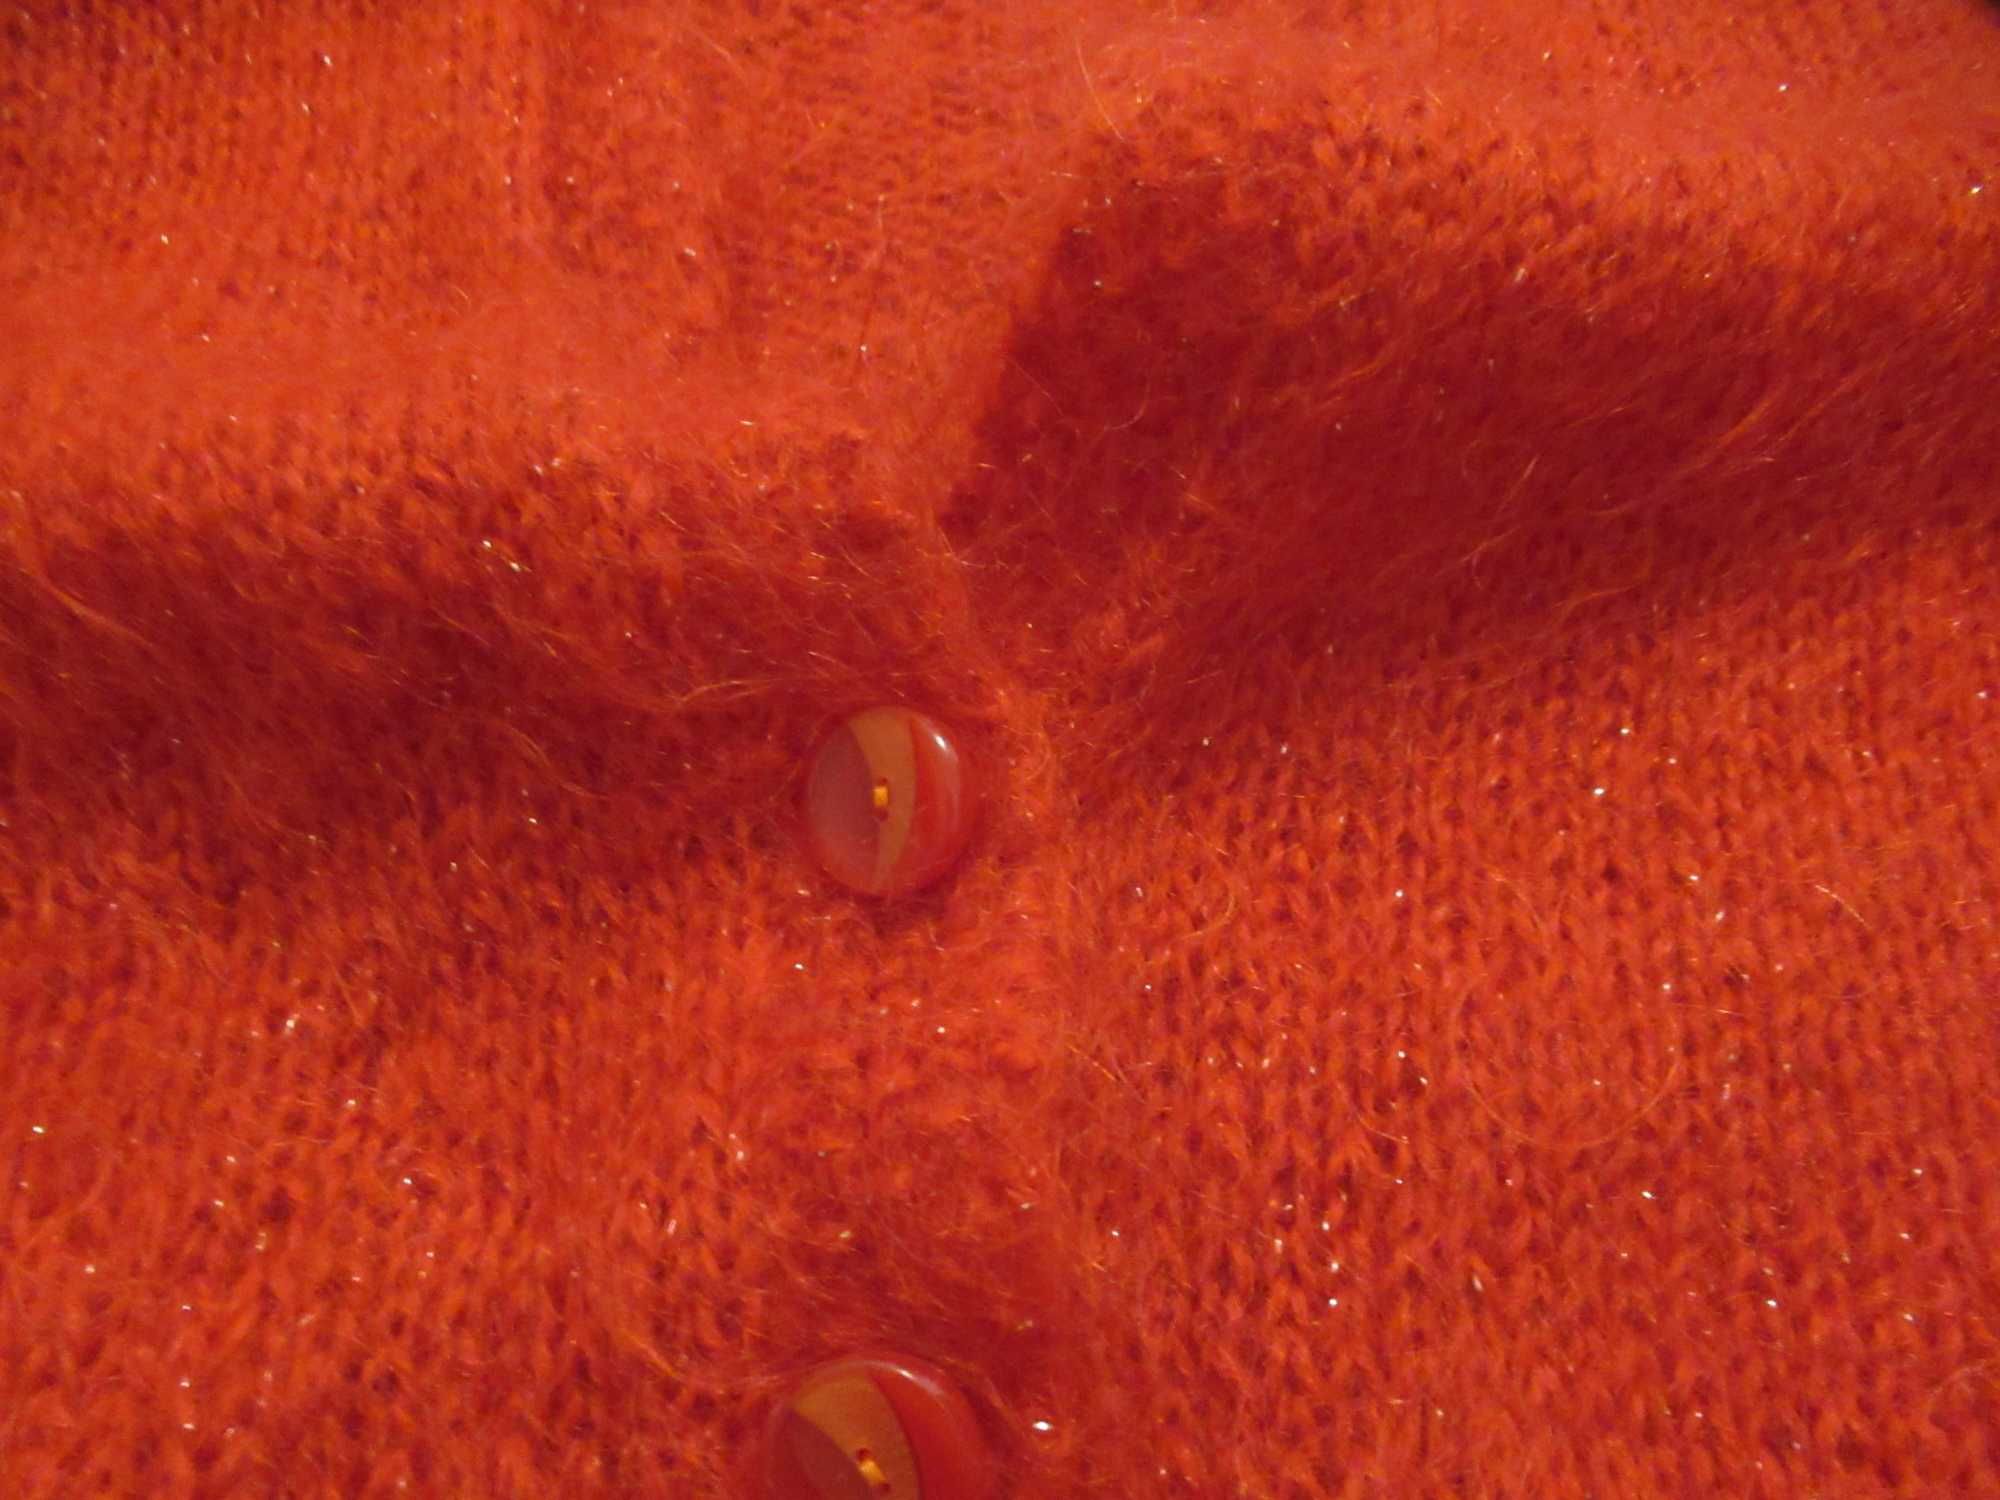 Sweter vintage czerwony 38 40 kardigan